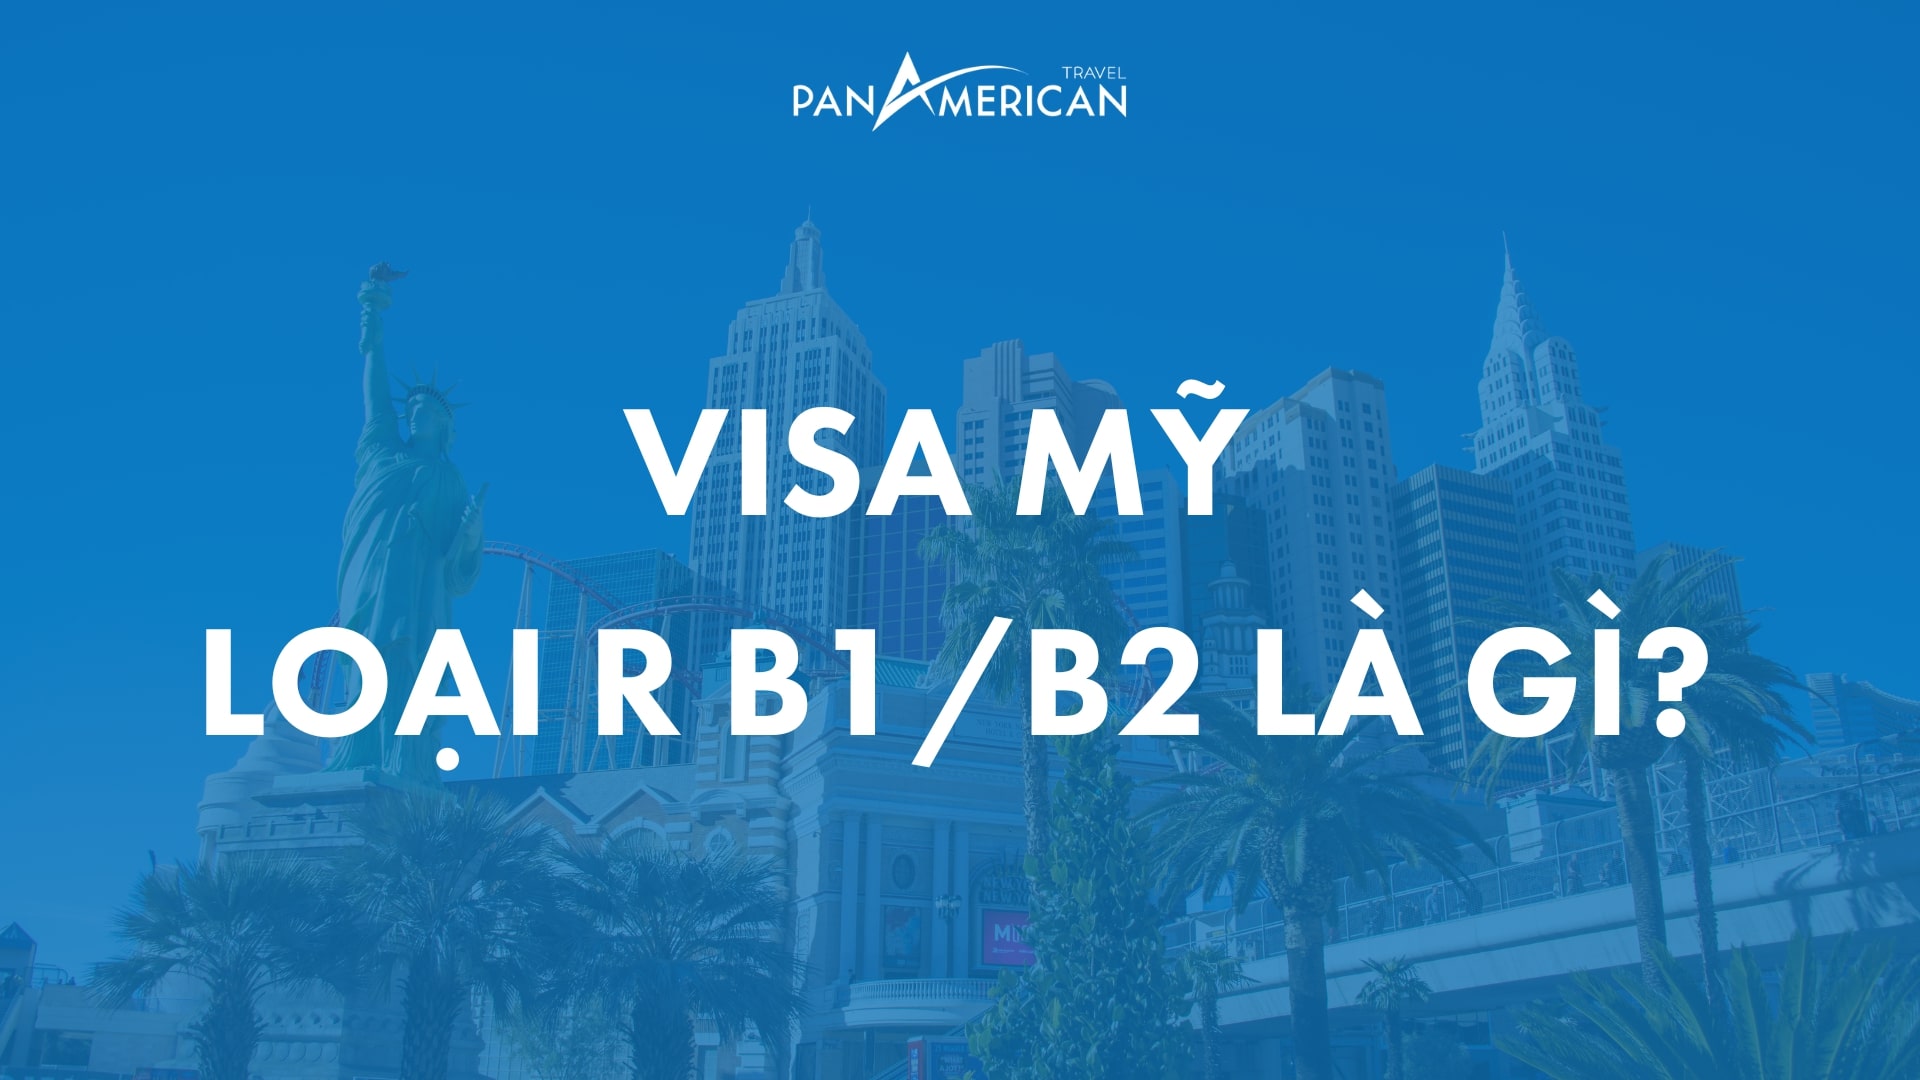 Ai được đăng ký xin visa Mỹ loại R B1/B2?
